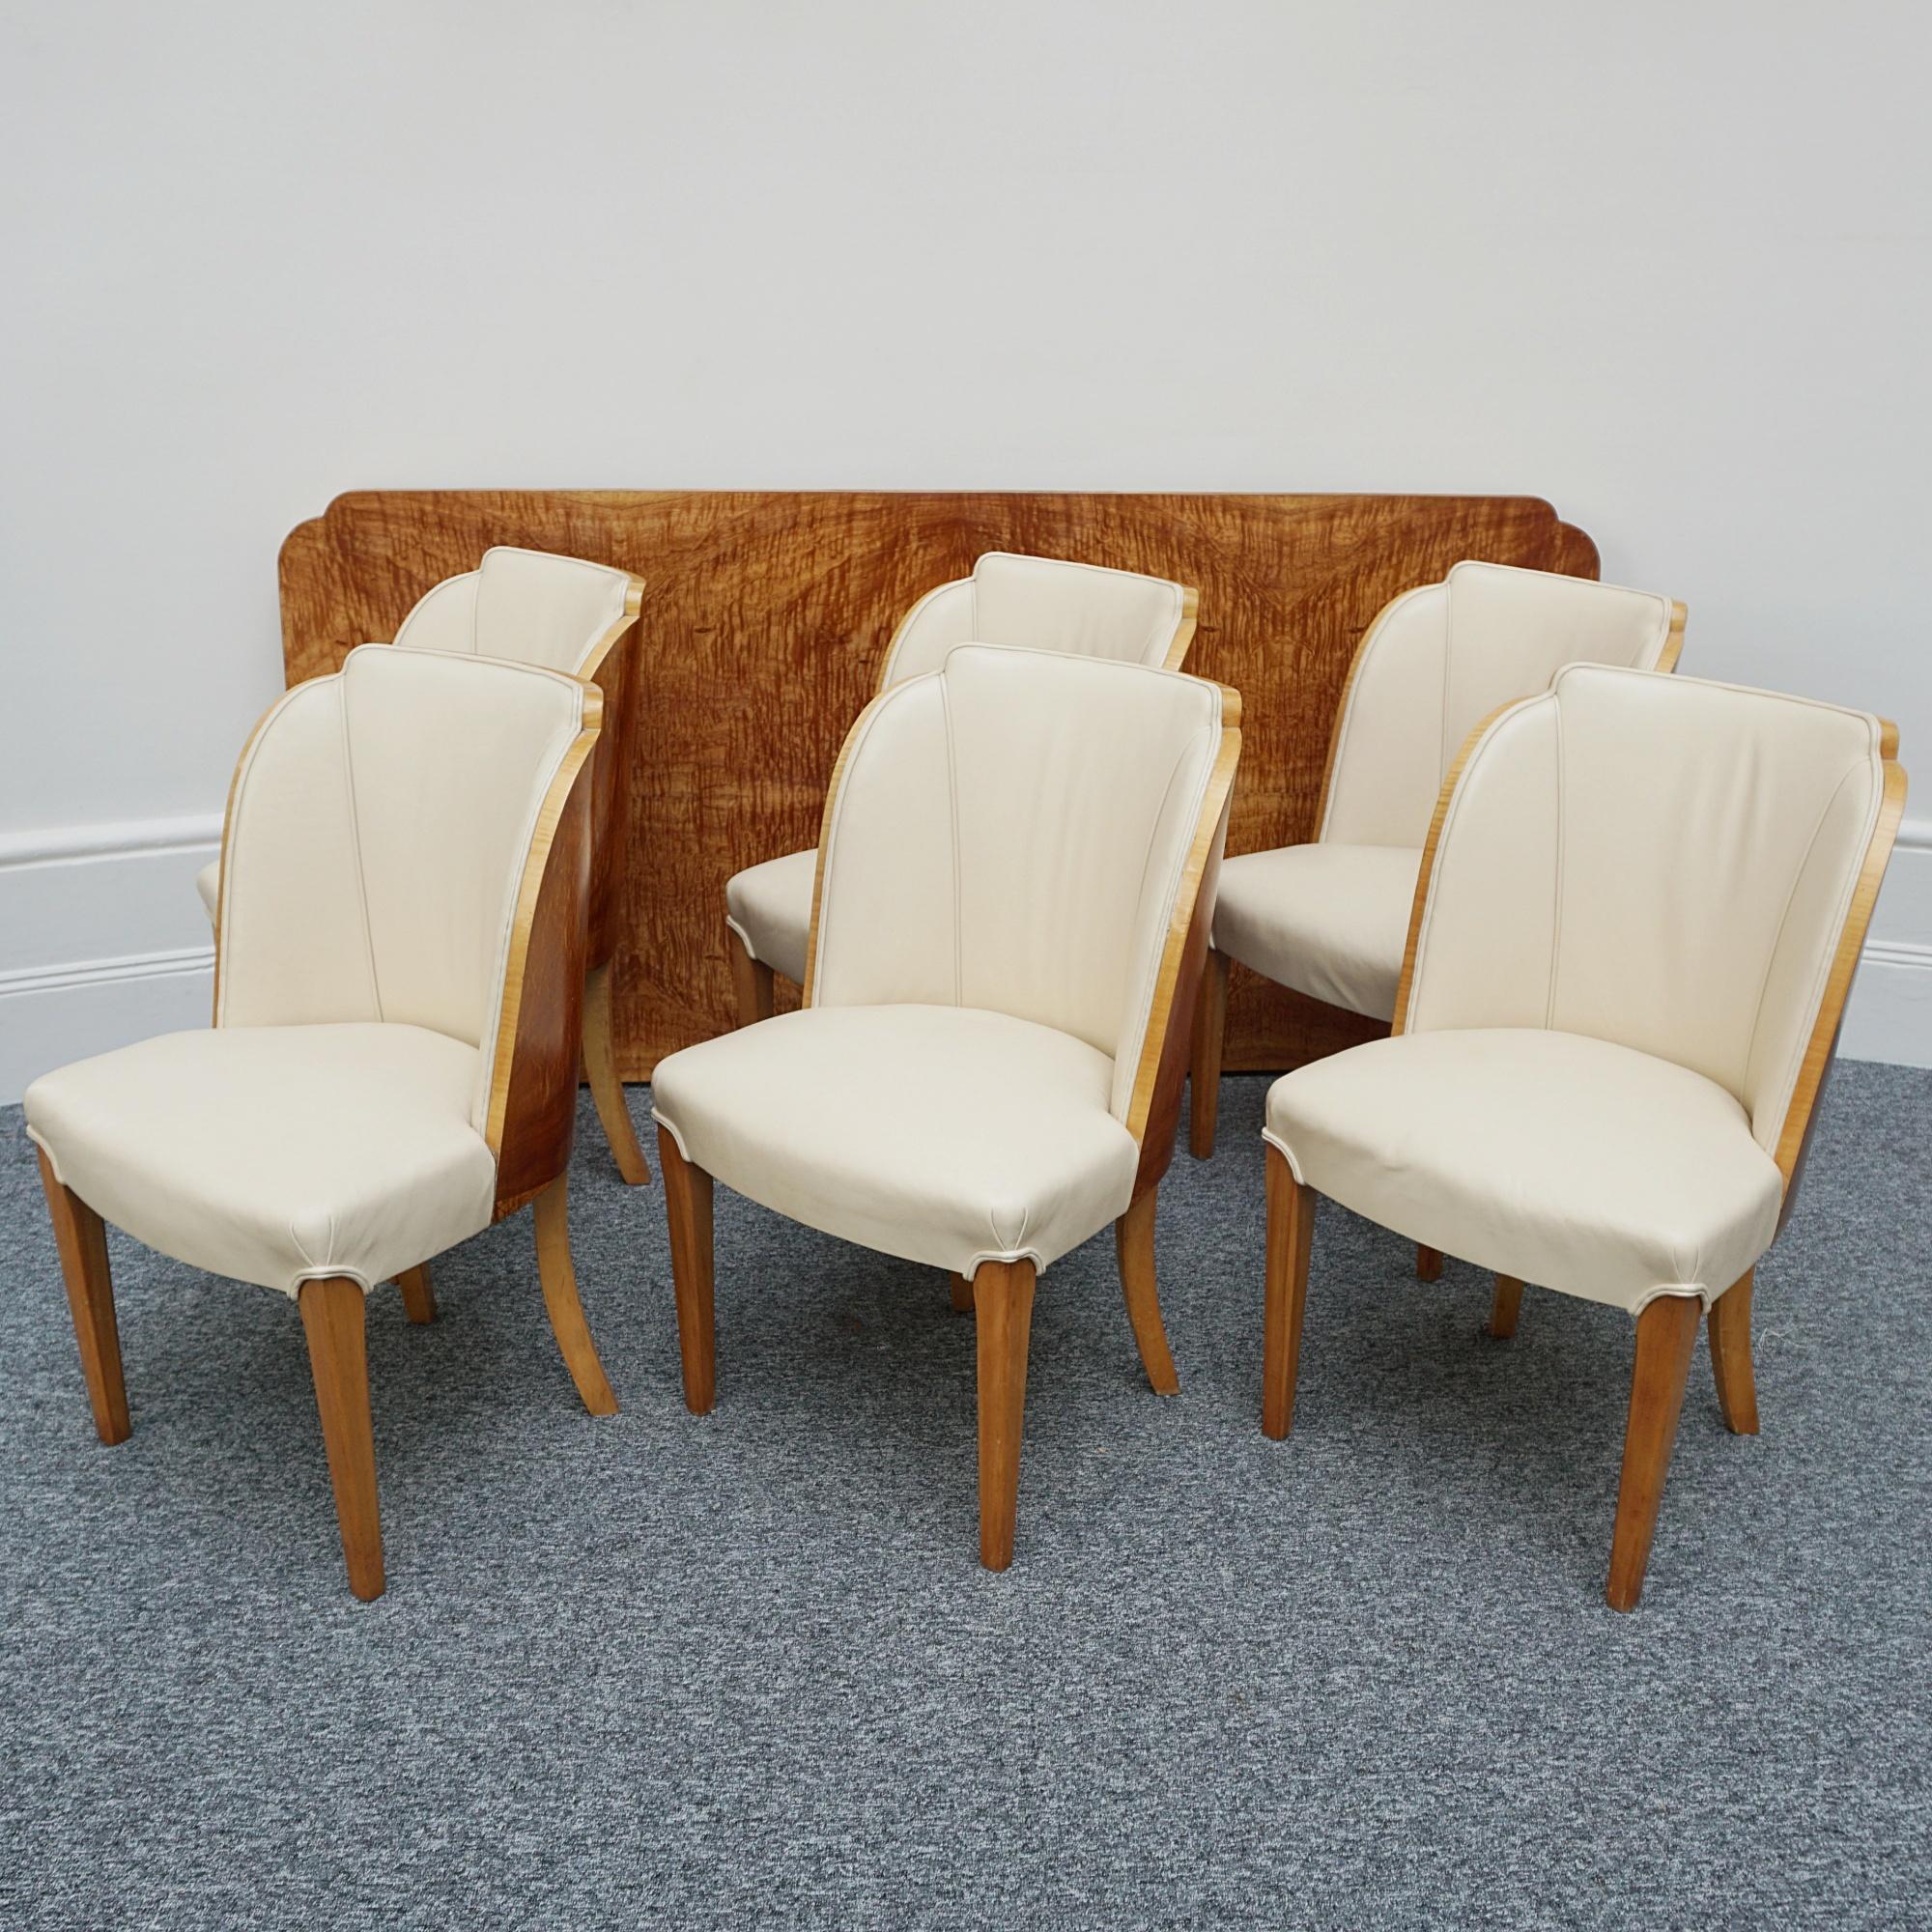 Eine Art-Deco-Esszimmergarnitur mit sechs Sitzplätzen von Harry & Lou Epstein. Sechs- bis achtsitzige satinholzfurnierte Tischplatte auf satinholzfurniertem Sockel. Sechs passende Sessel mit Wolkenrücken und Satinholzfurnier. Polsterung aus